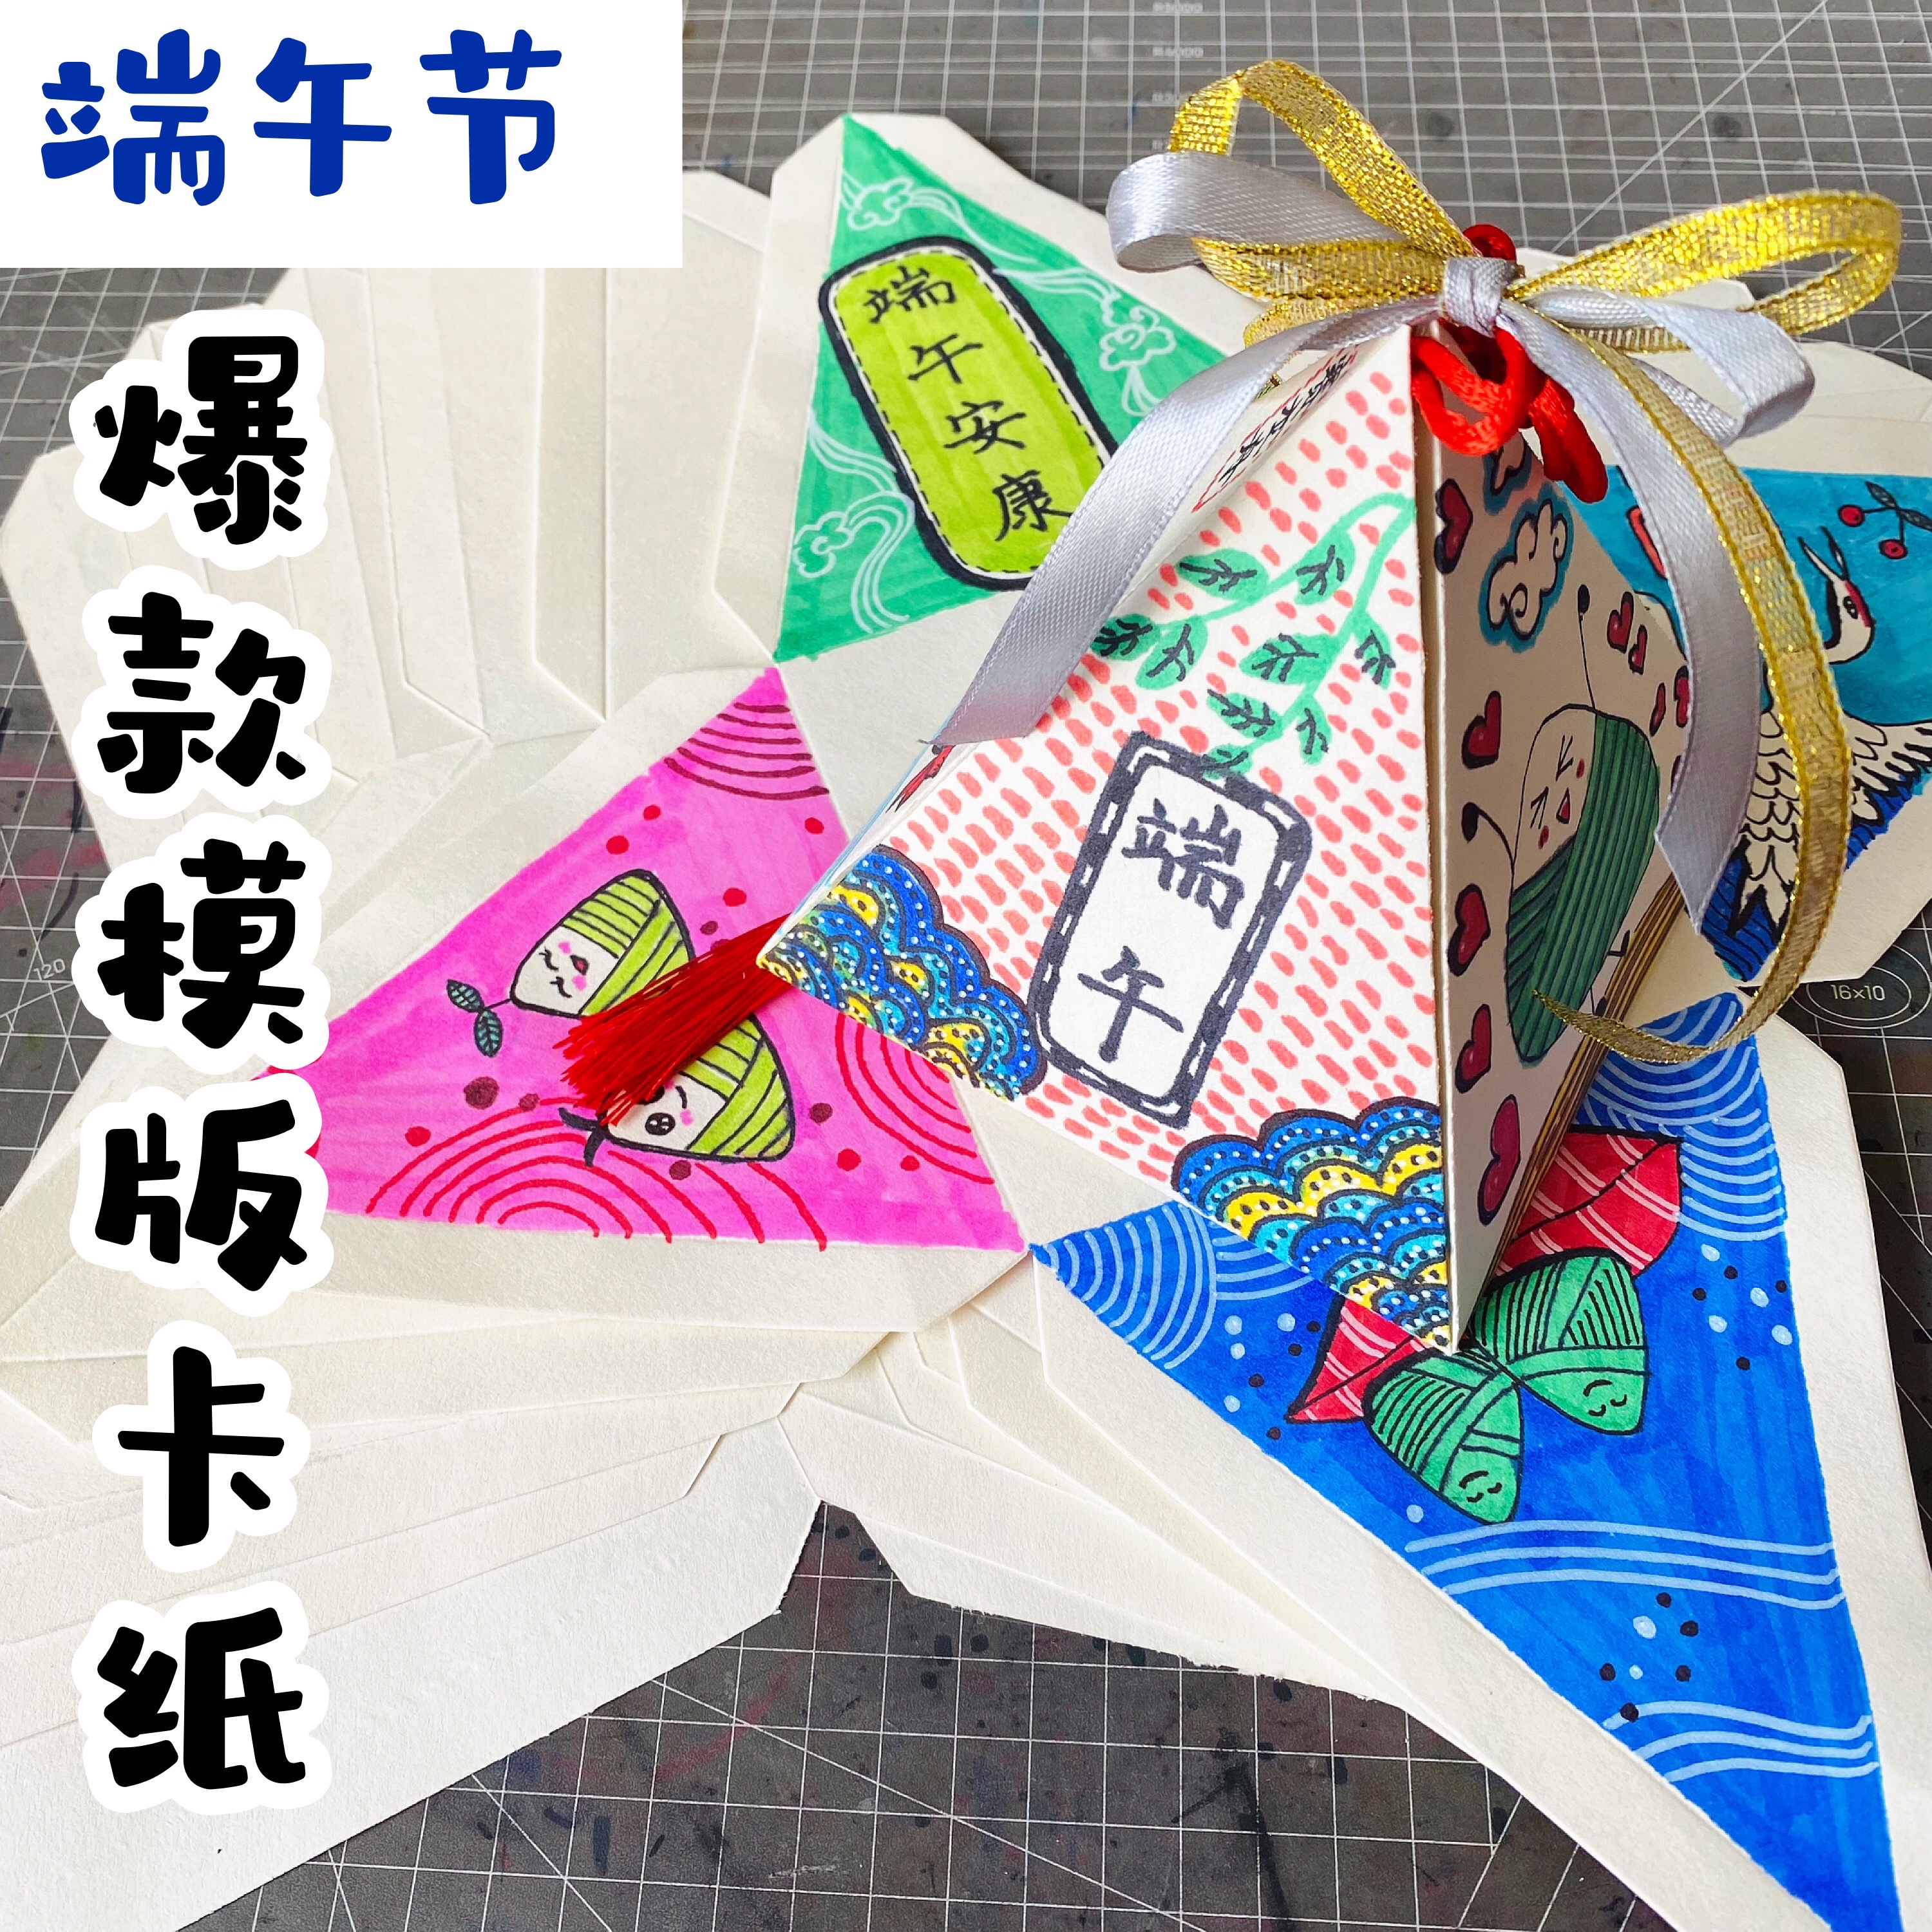 儿童端午节手工粽子纸质挂饰diy涂色绘画龙舟材料包幼儿亲子活动